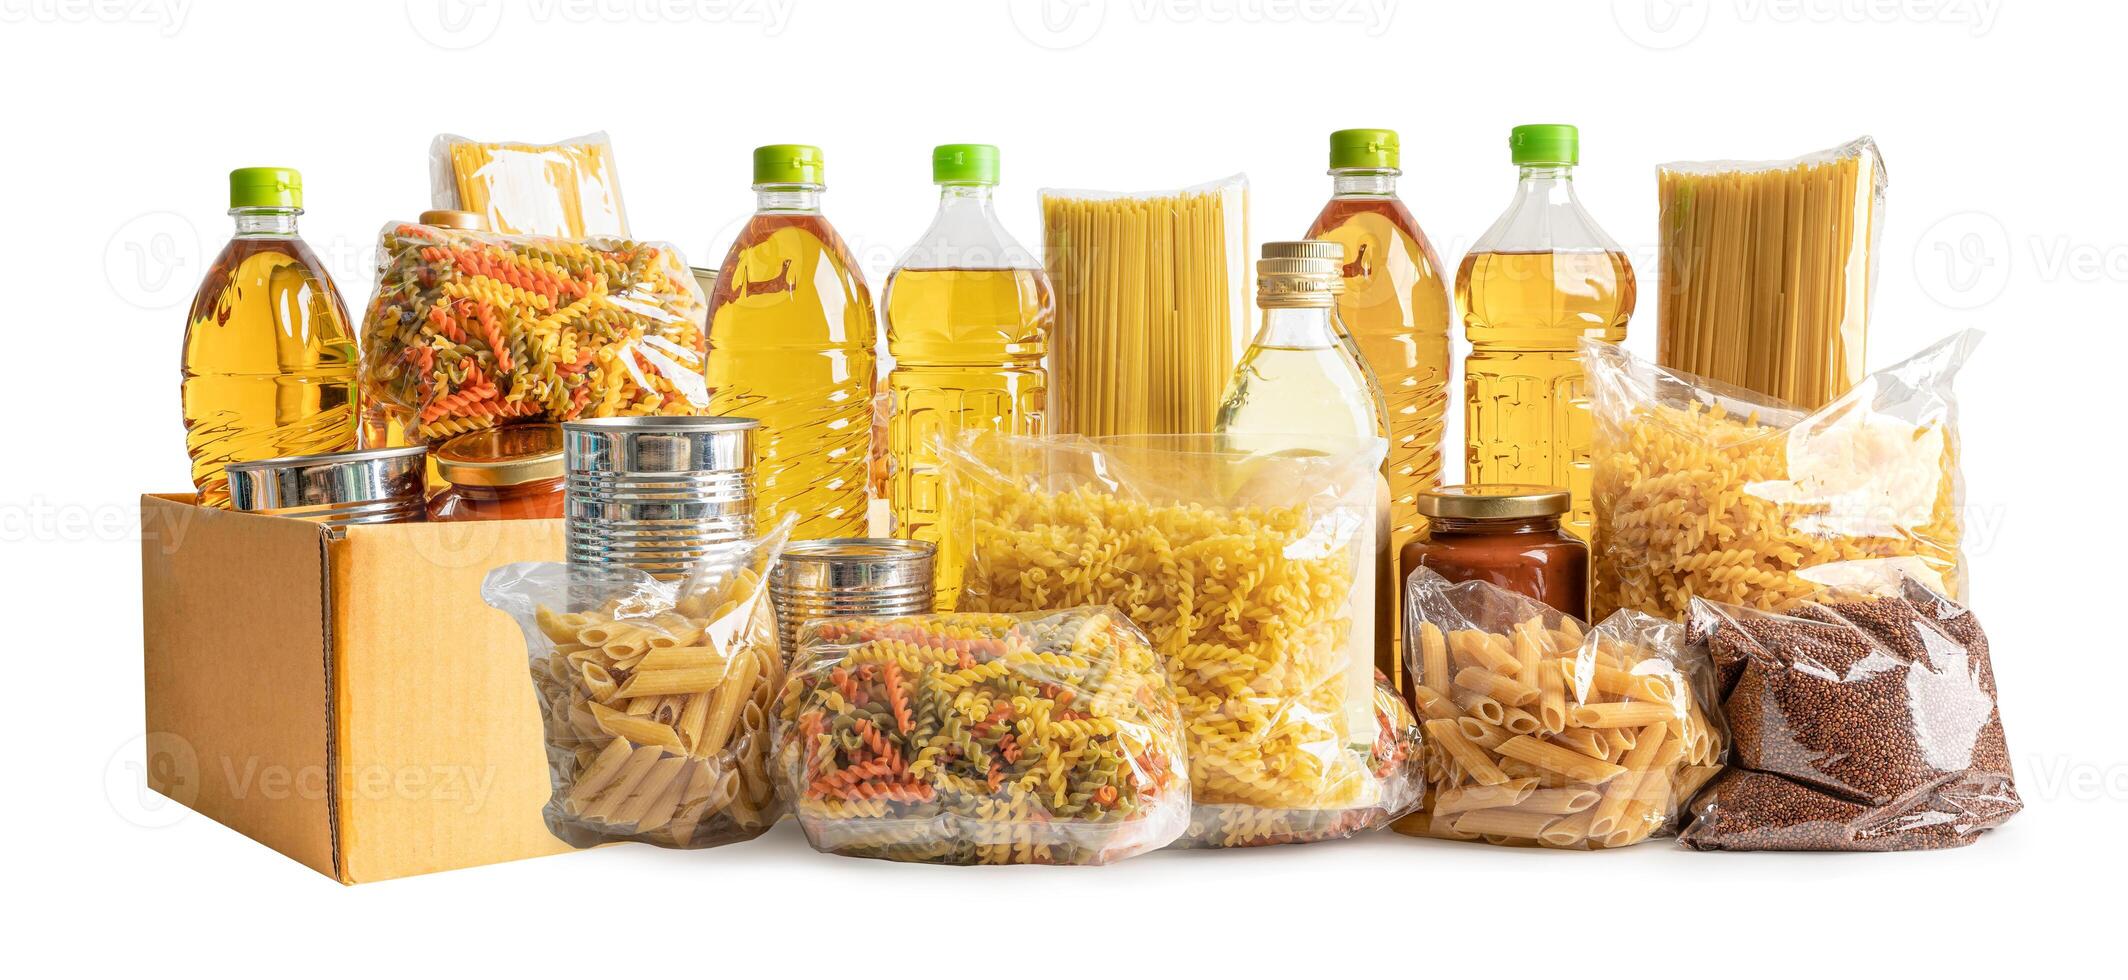 Lebensmittel zum Spenden, Lagern und Liefern. verschiedene Lebensmittel, Nudeln, Speiseöl und Konserven im Karton. foto